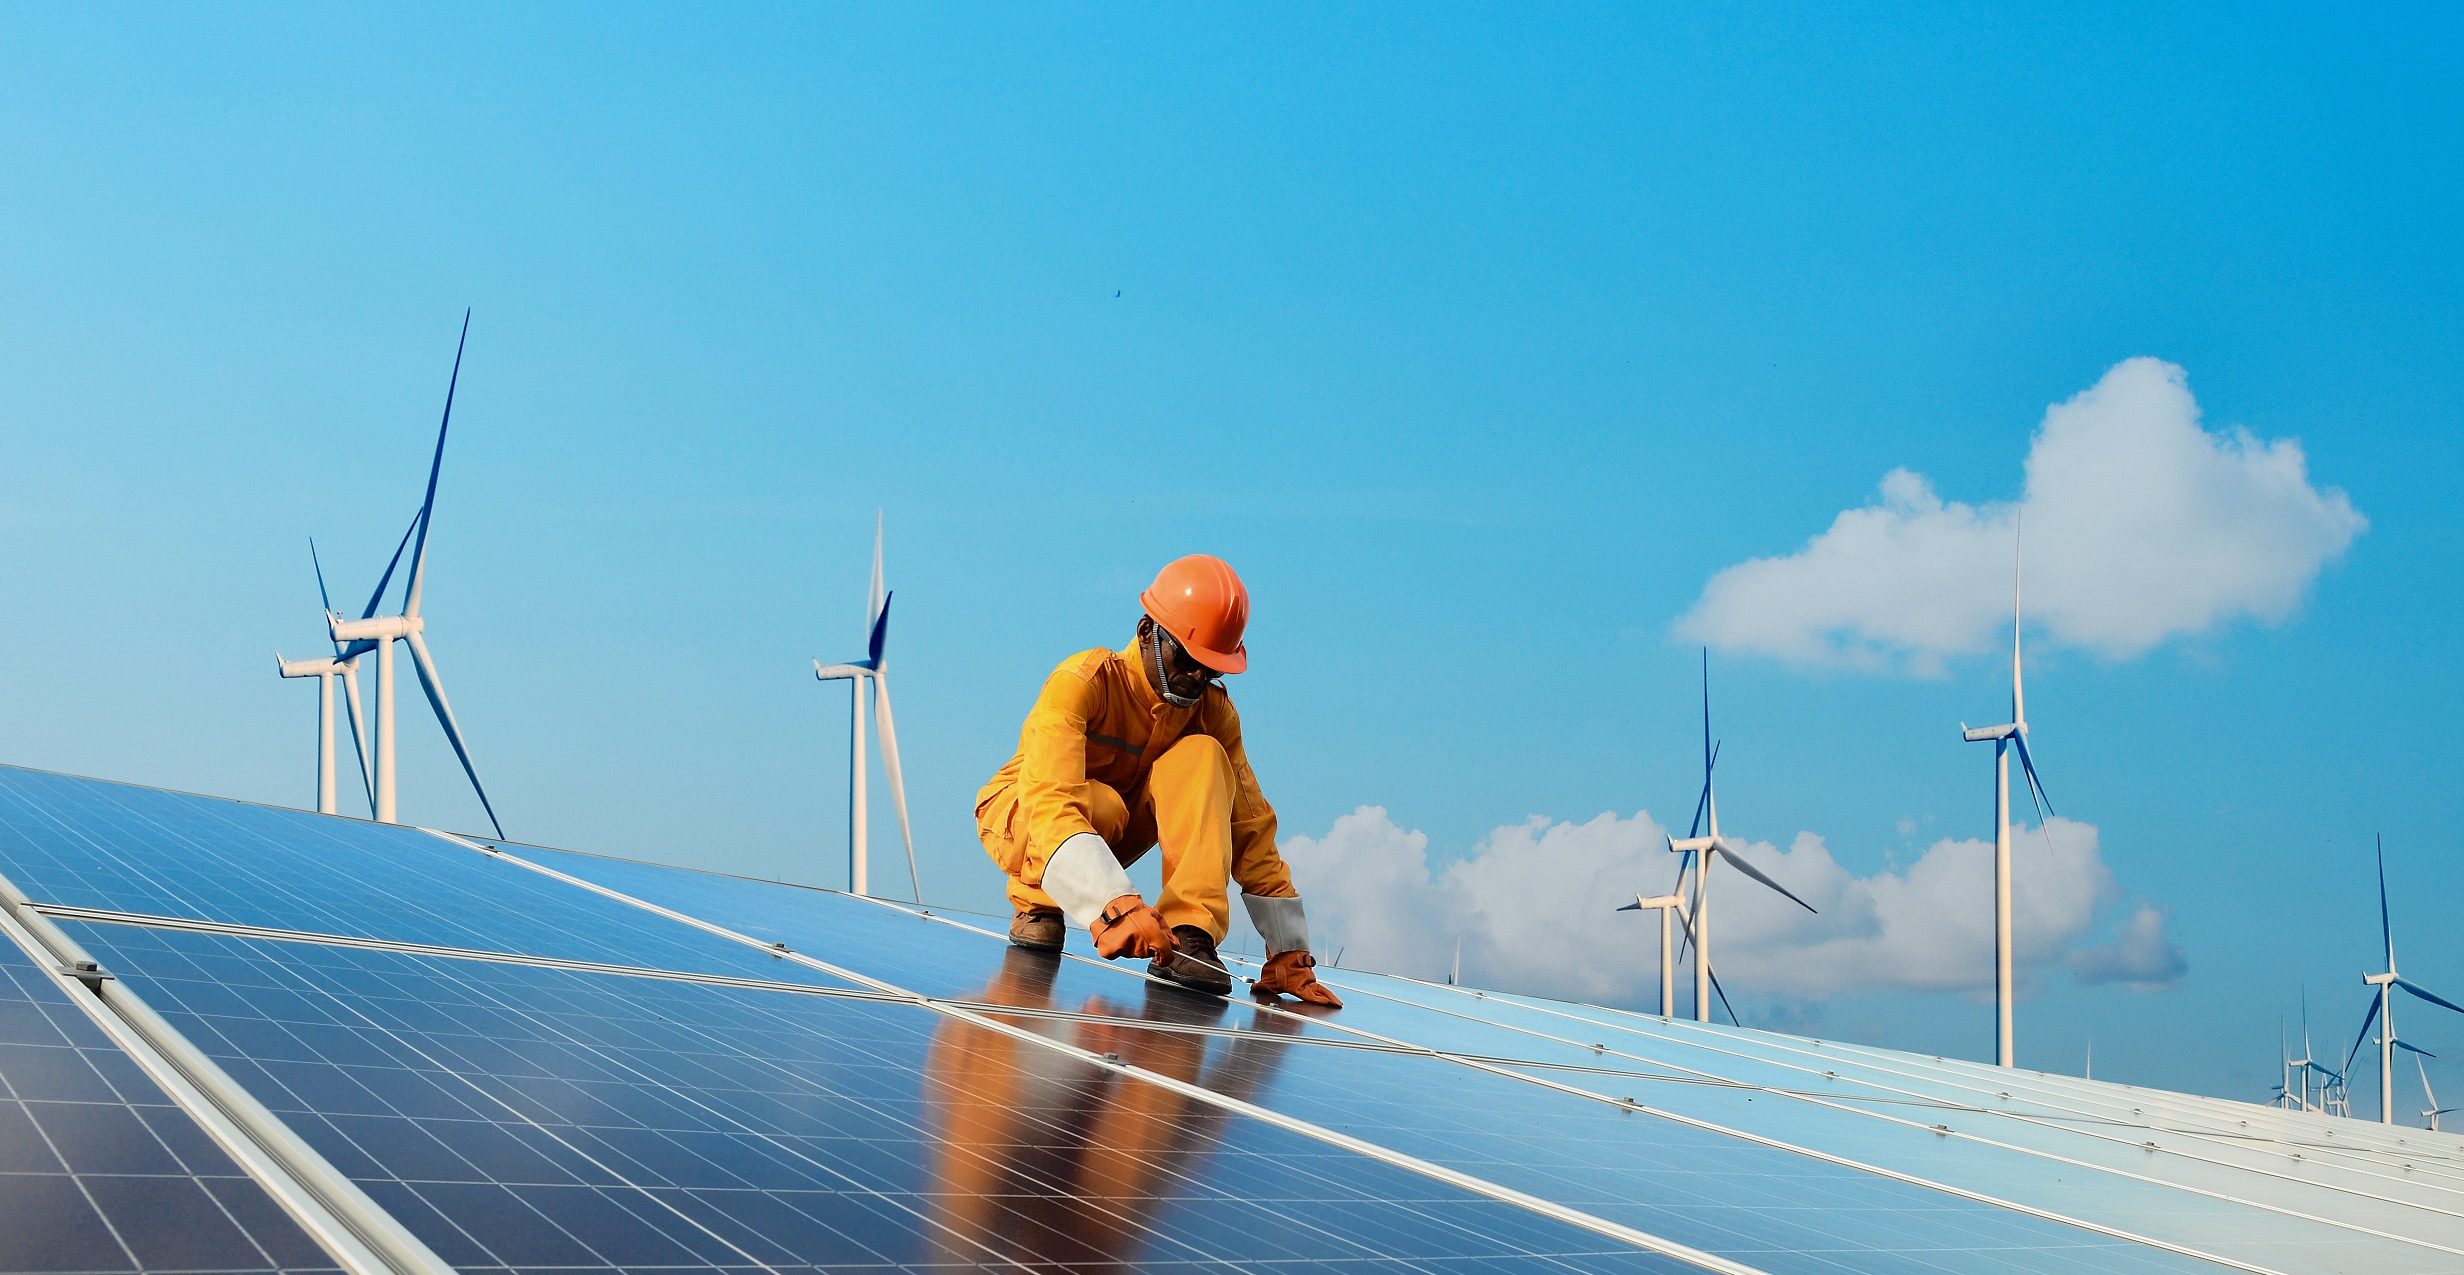 Türkiye’deki yenilenebilir enerji proje stoku, 110 bin kişilik yeni istihdam potansiyeli taşıyor